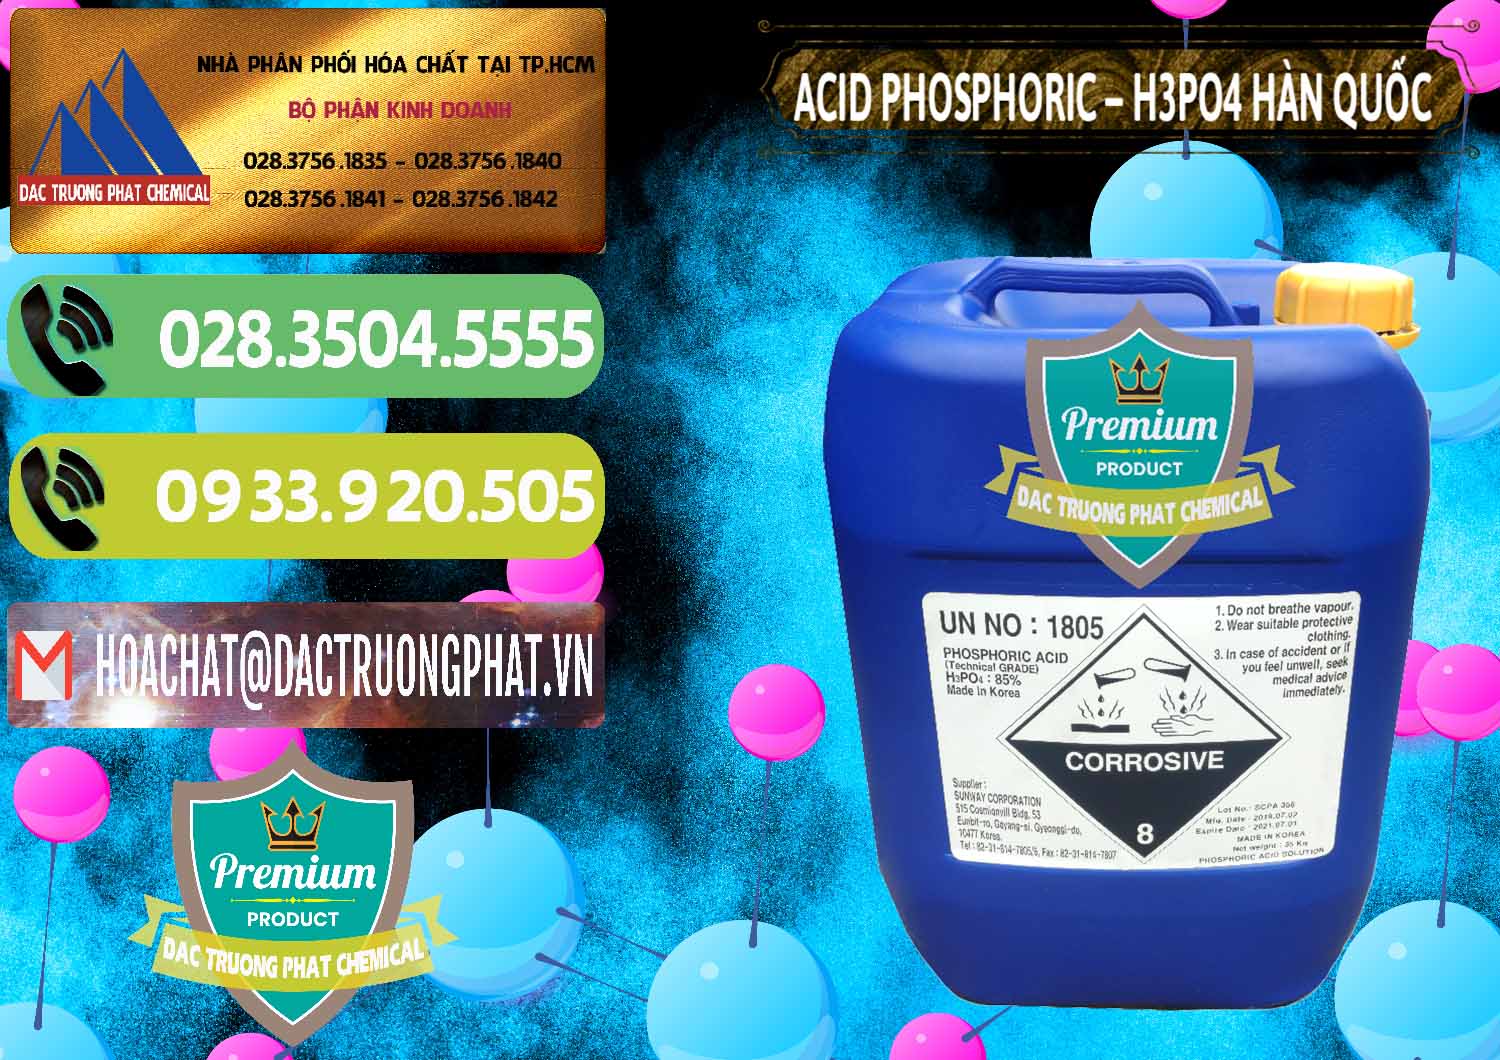 Chuyên bán và cung cấp Acid Phosphoric – H3PO4 85% Can Xanh Hàn Quốc Korea - 0016 - Nơi phân phối & cung cấp hóa chất tại TP.HCM - hoachatmientay.vn